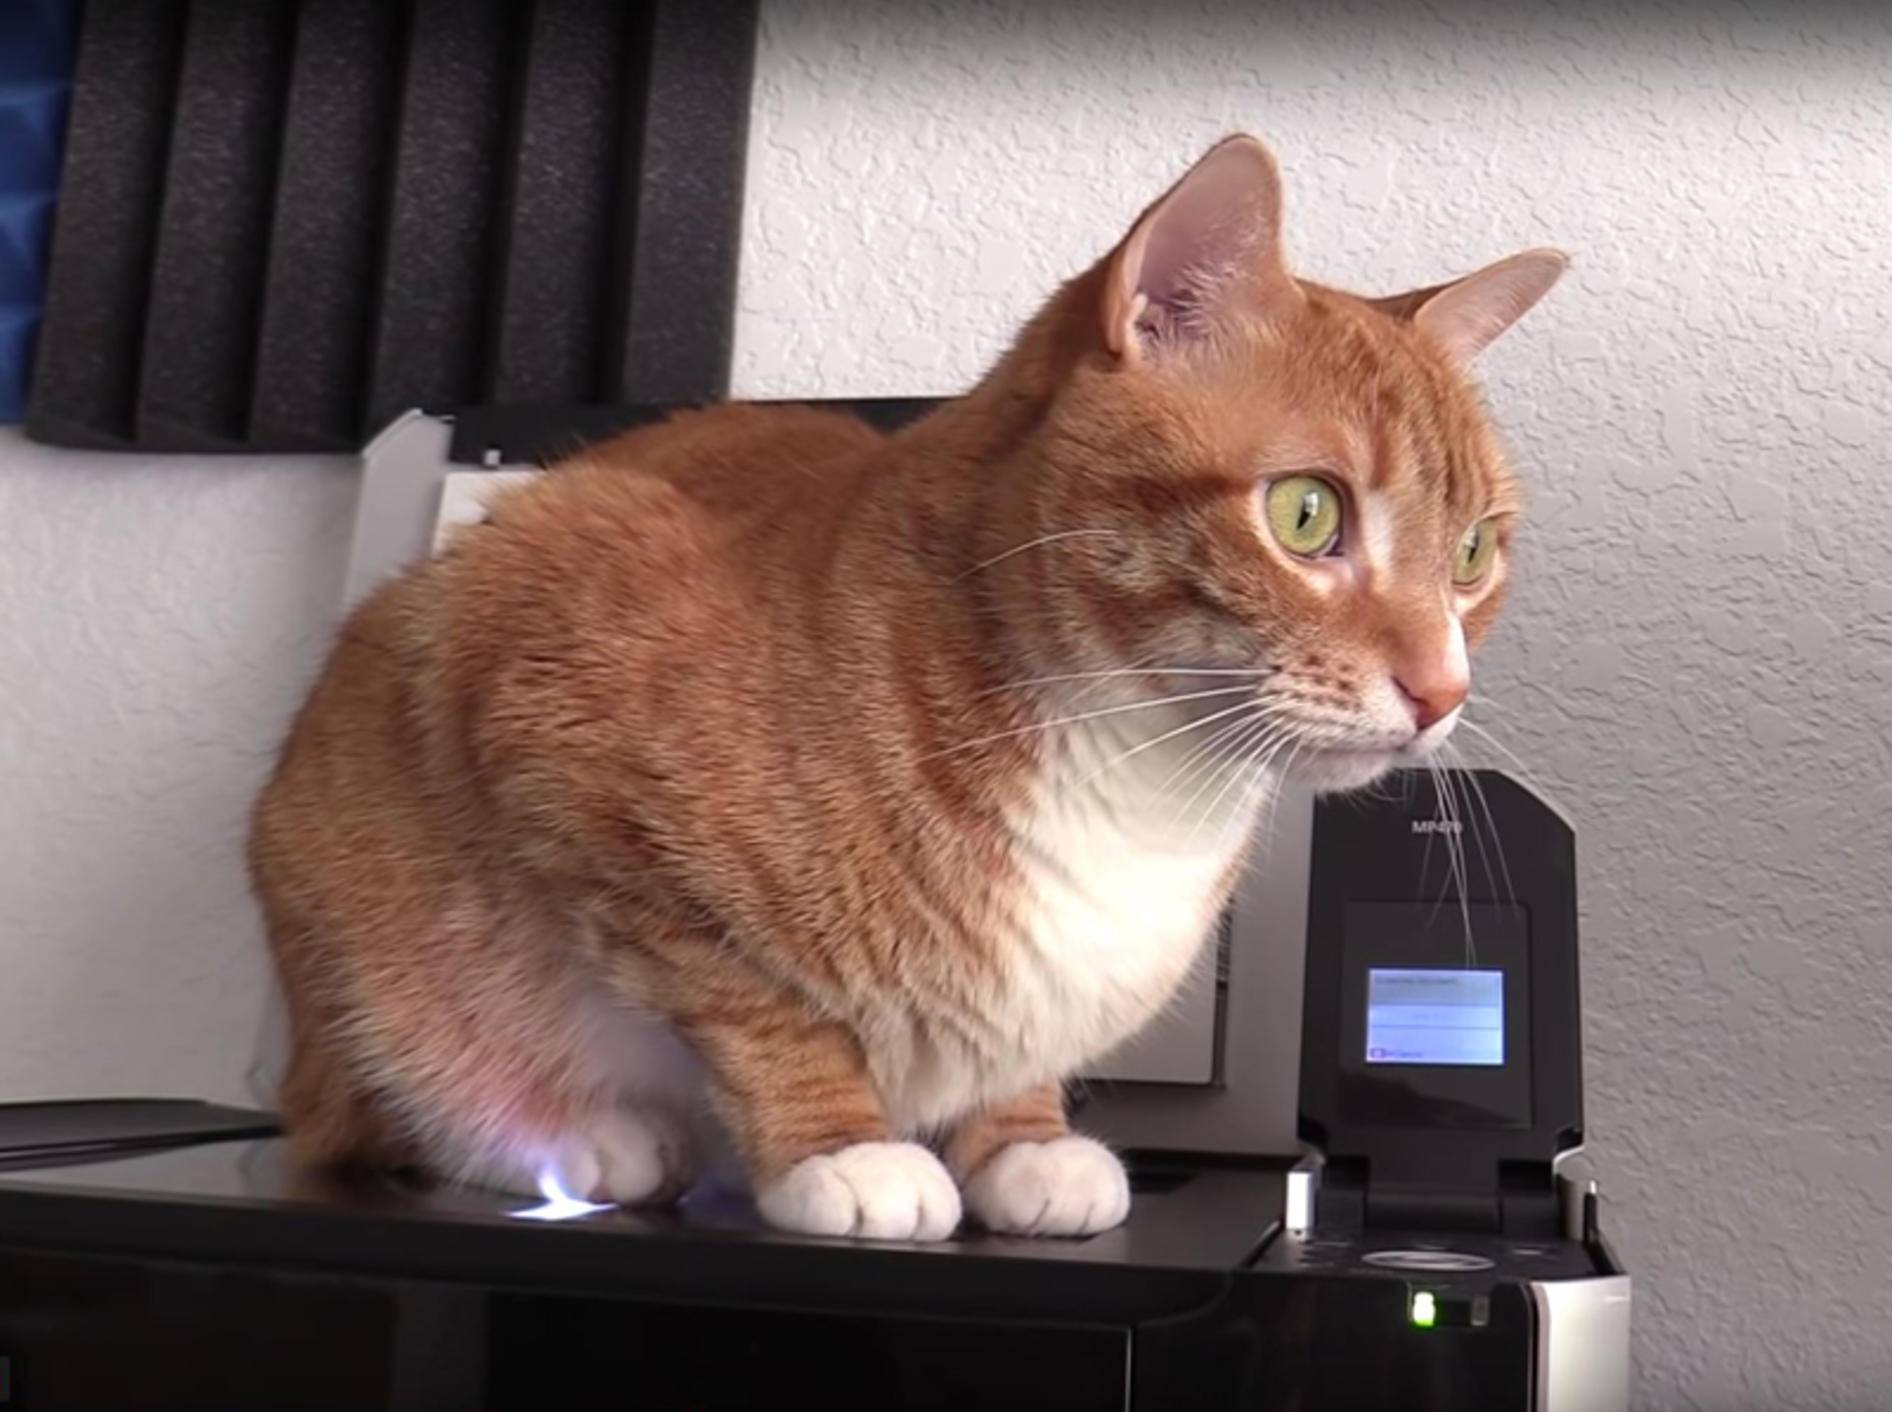 Katzen Jugg und Marmalade scannen ihre Plüschpopos – YouTube / Cole and Marmalade